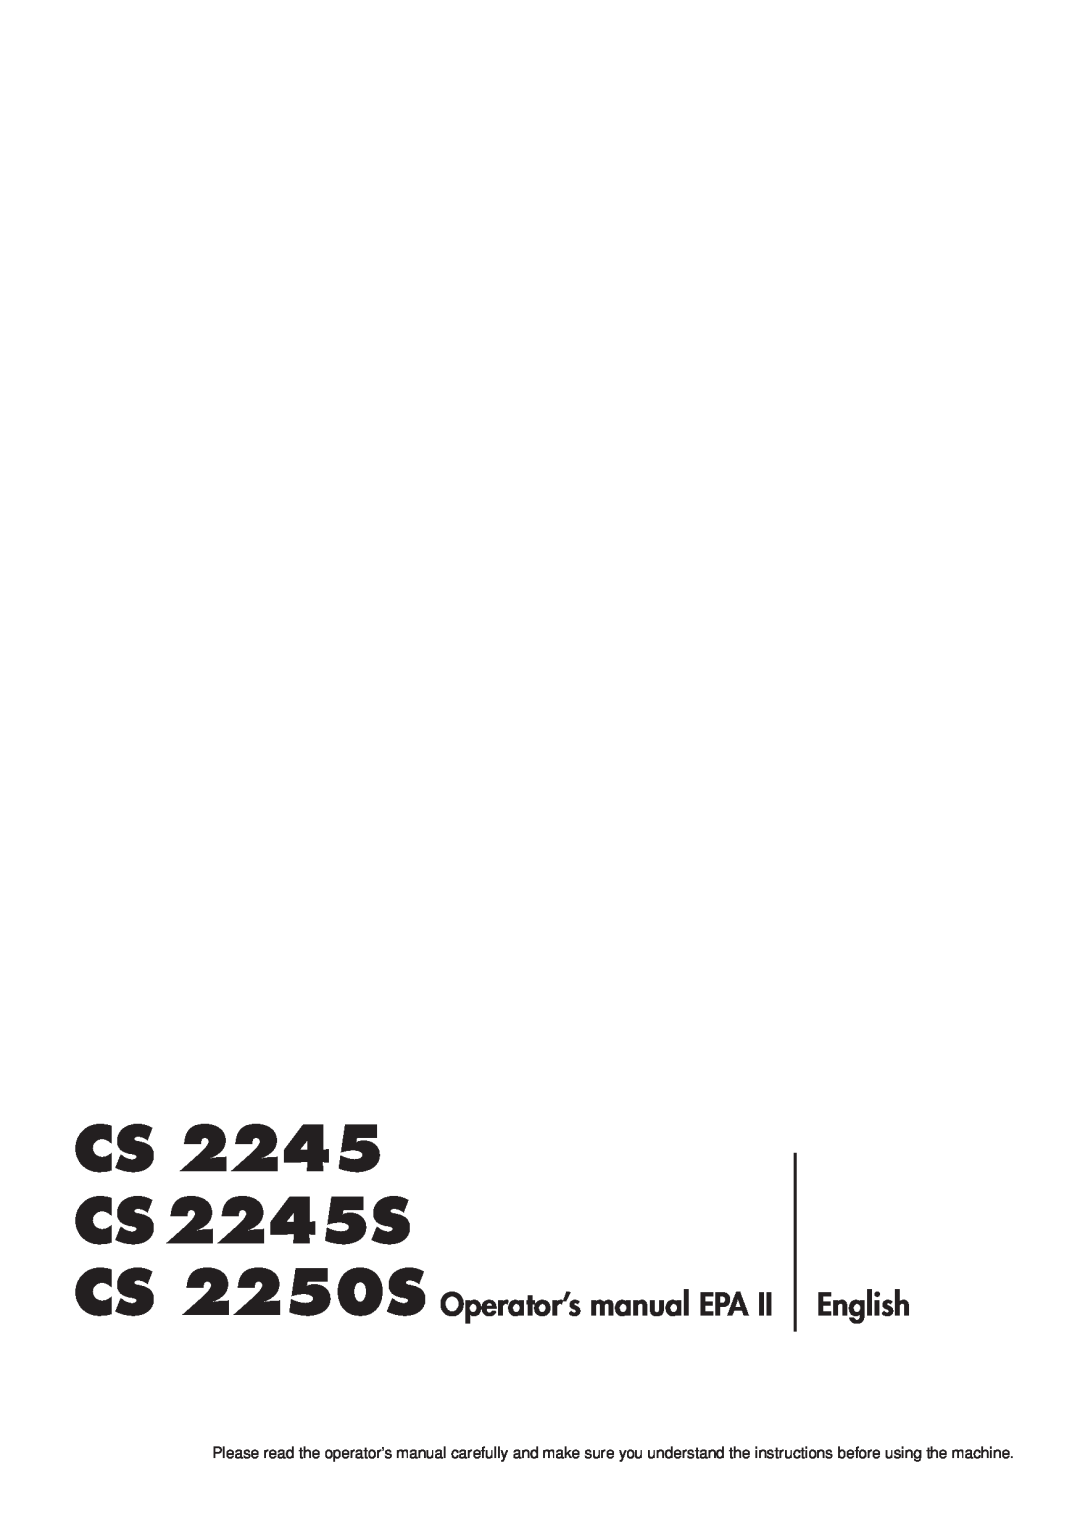 Jonsered manual CS CS 2245S, CS 2250S Operator’s manual EPA, English 